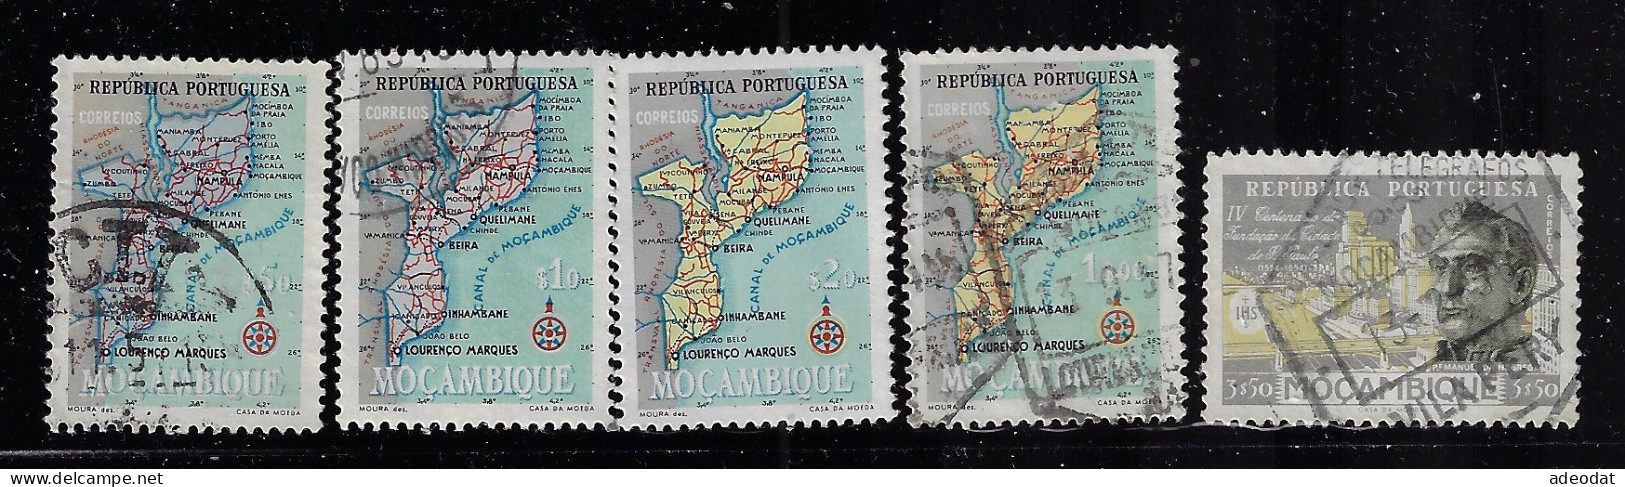 MOZAMBIQUE 1954  SCOTT#387-390,395  CV $1.10 - Mozambique